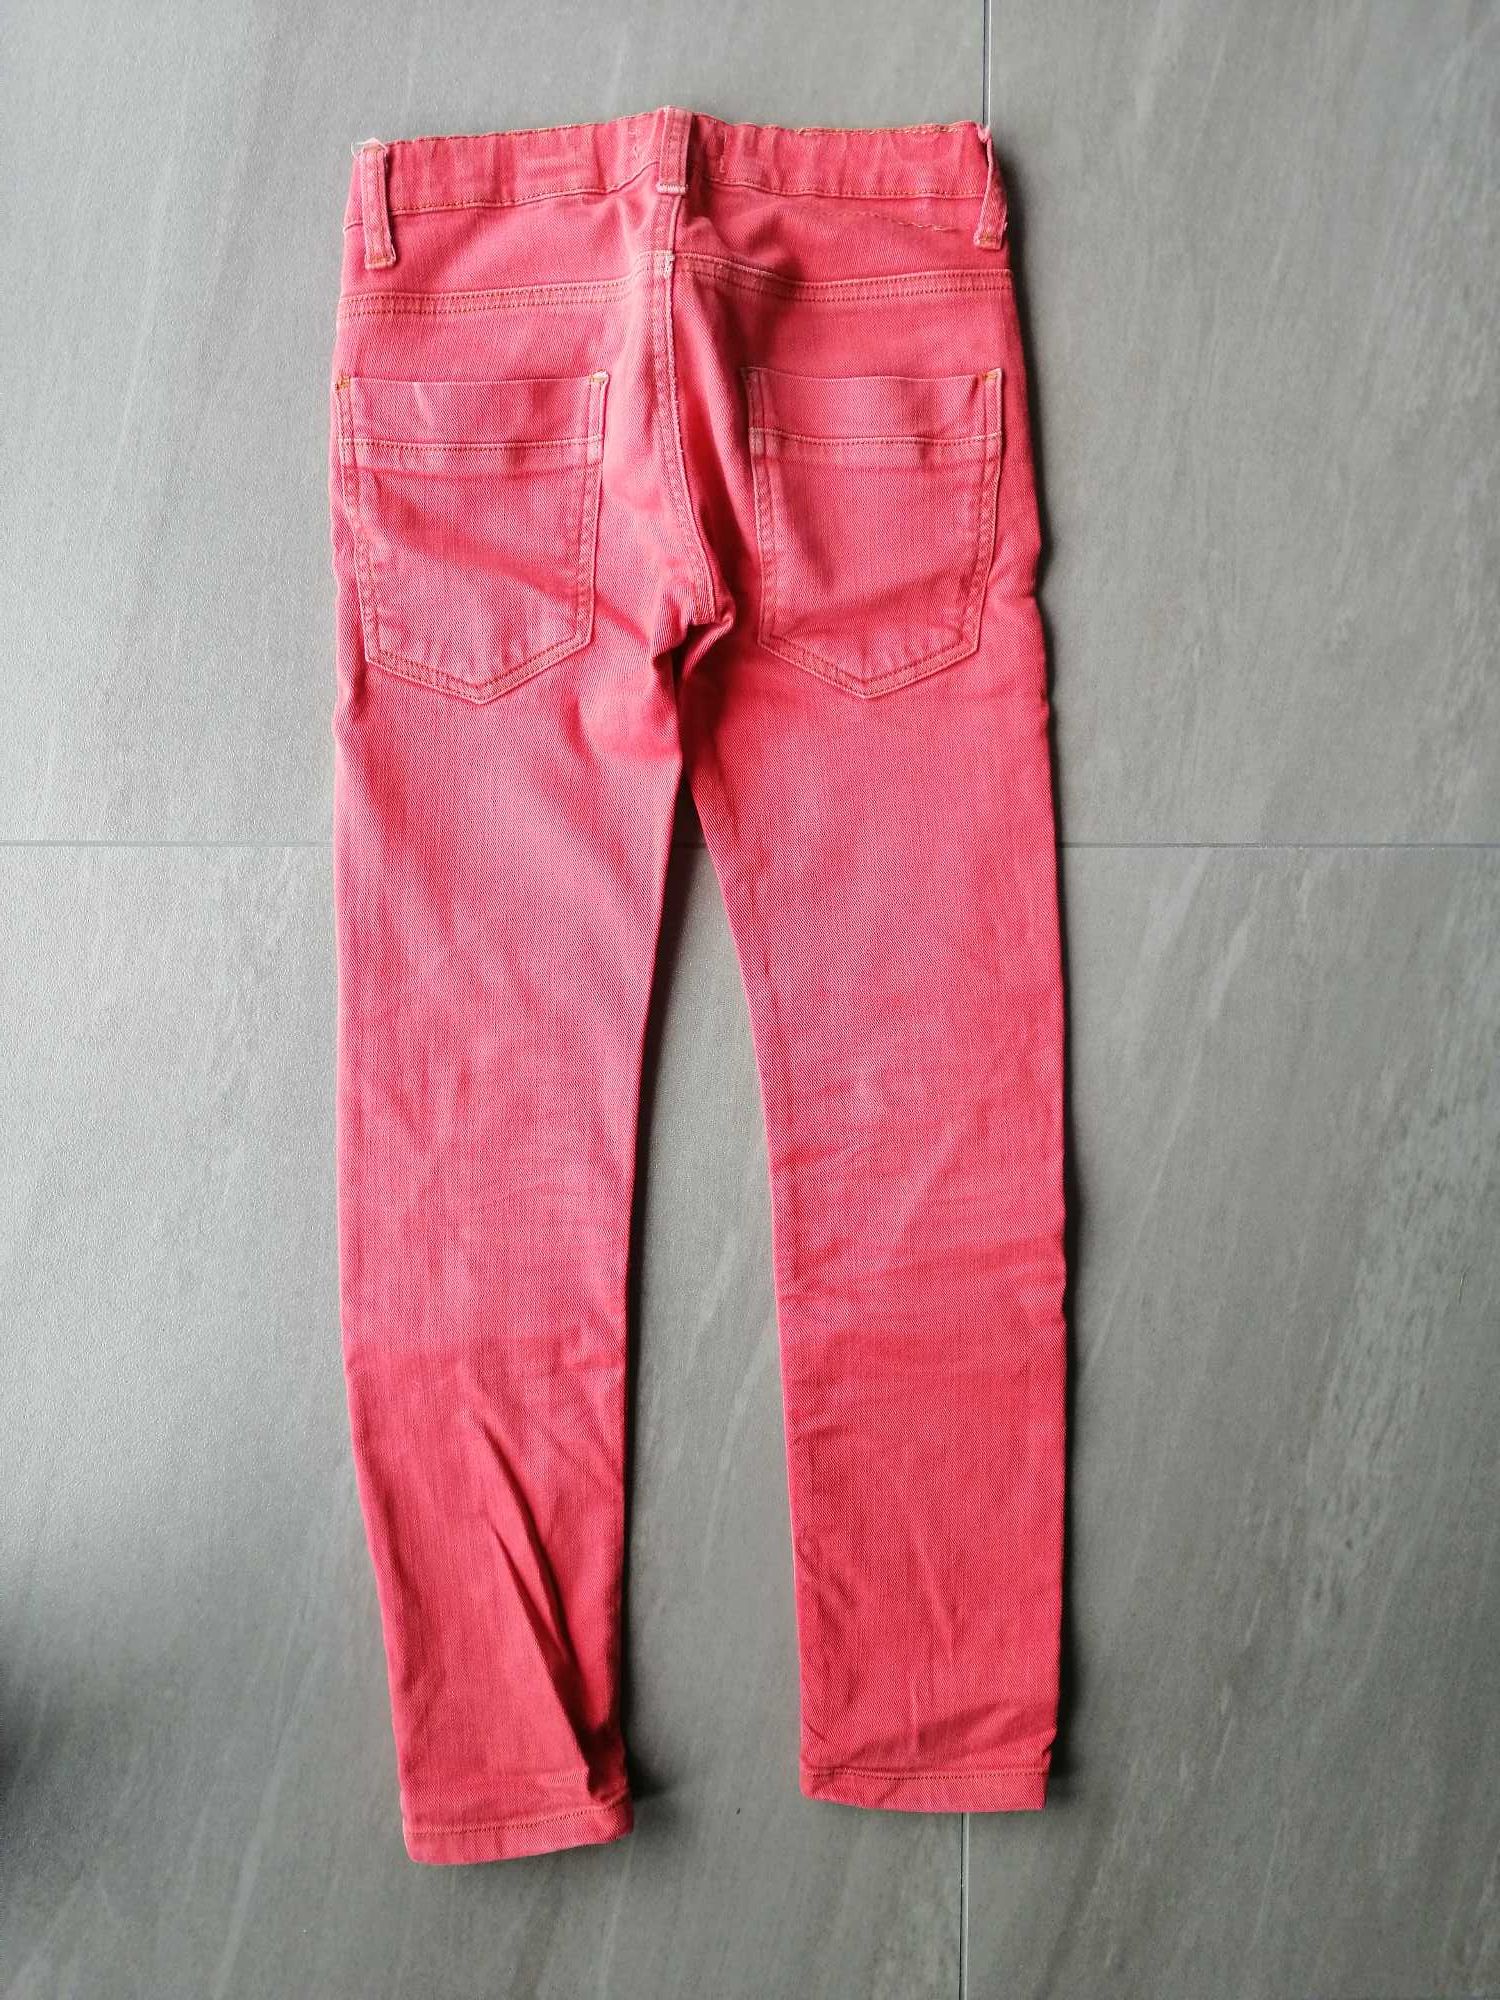 Spodnie jeansowe Zara Boys 128 cm, 7-8 lat. Super stan.